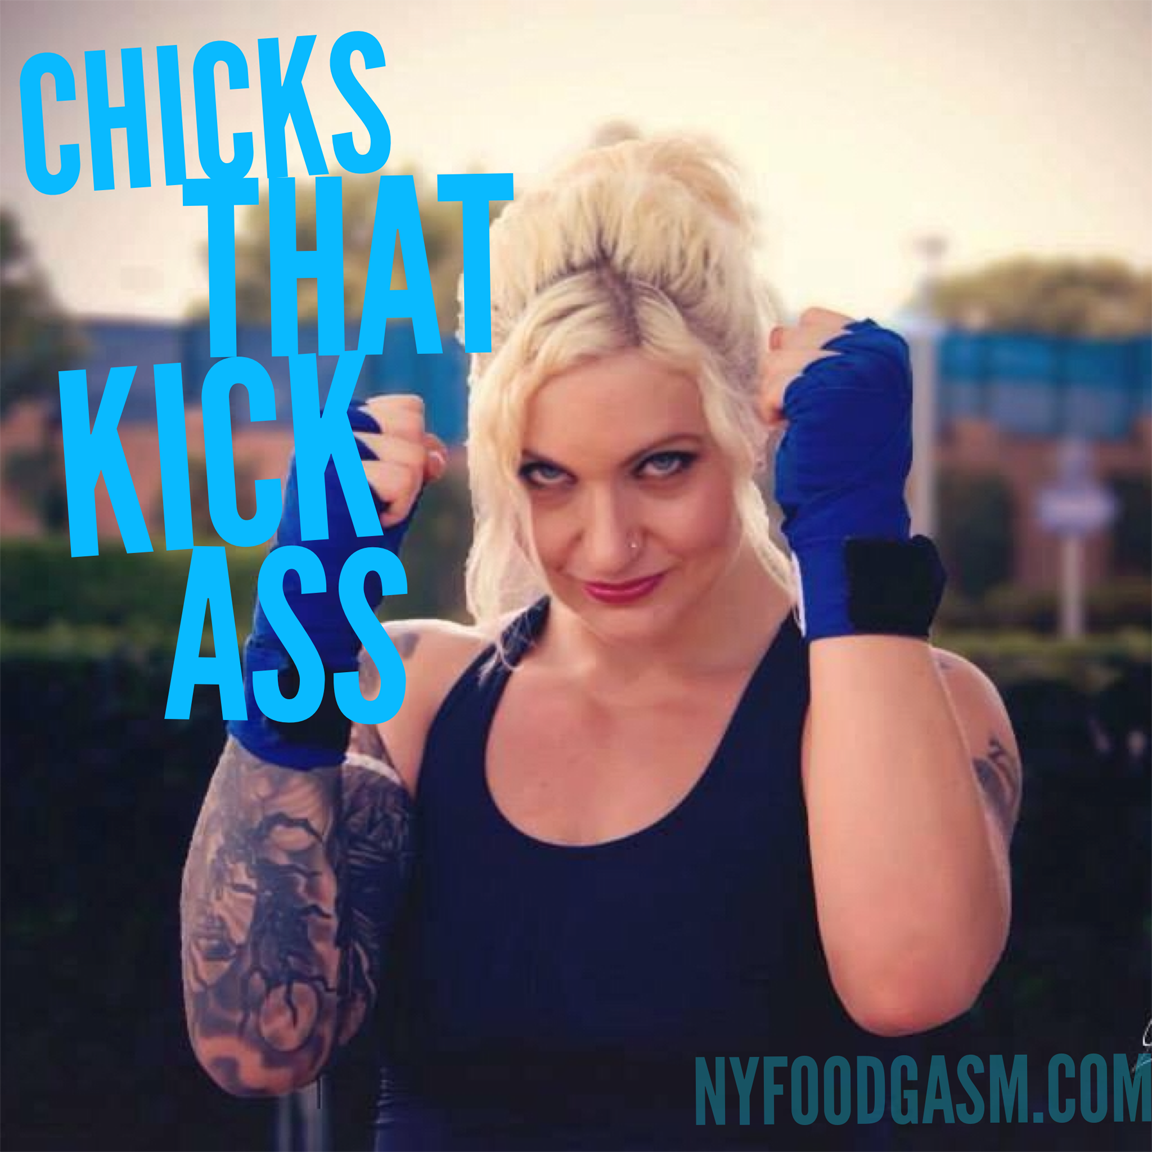 Chicks That Kick Ass- Diana Koutinas